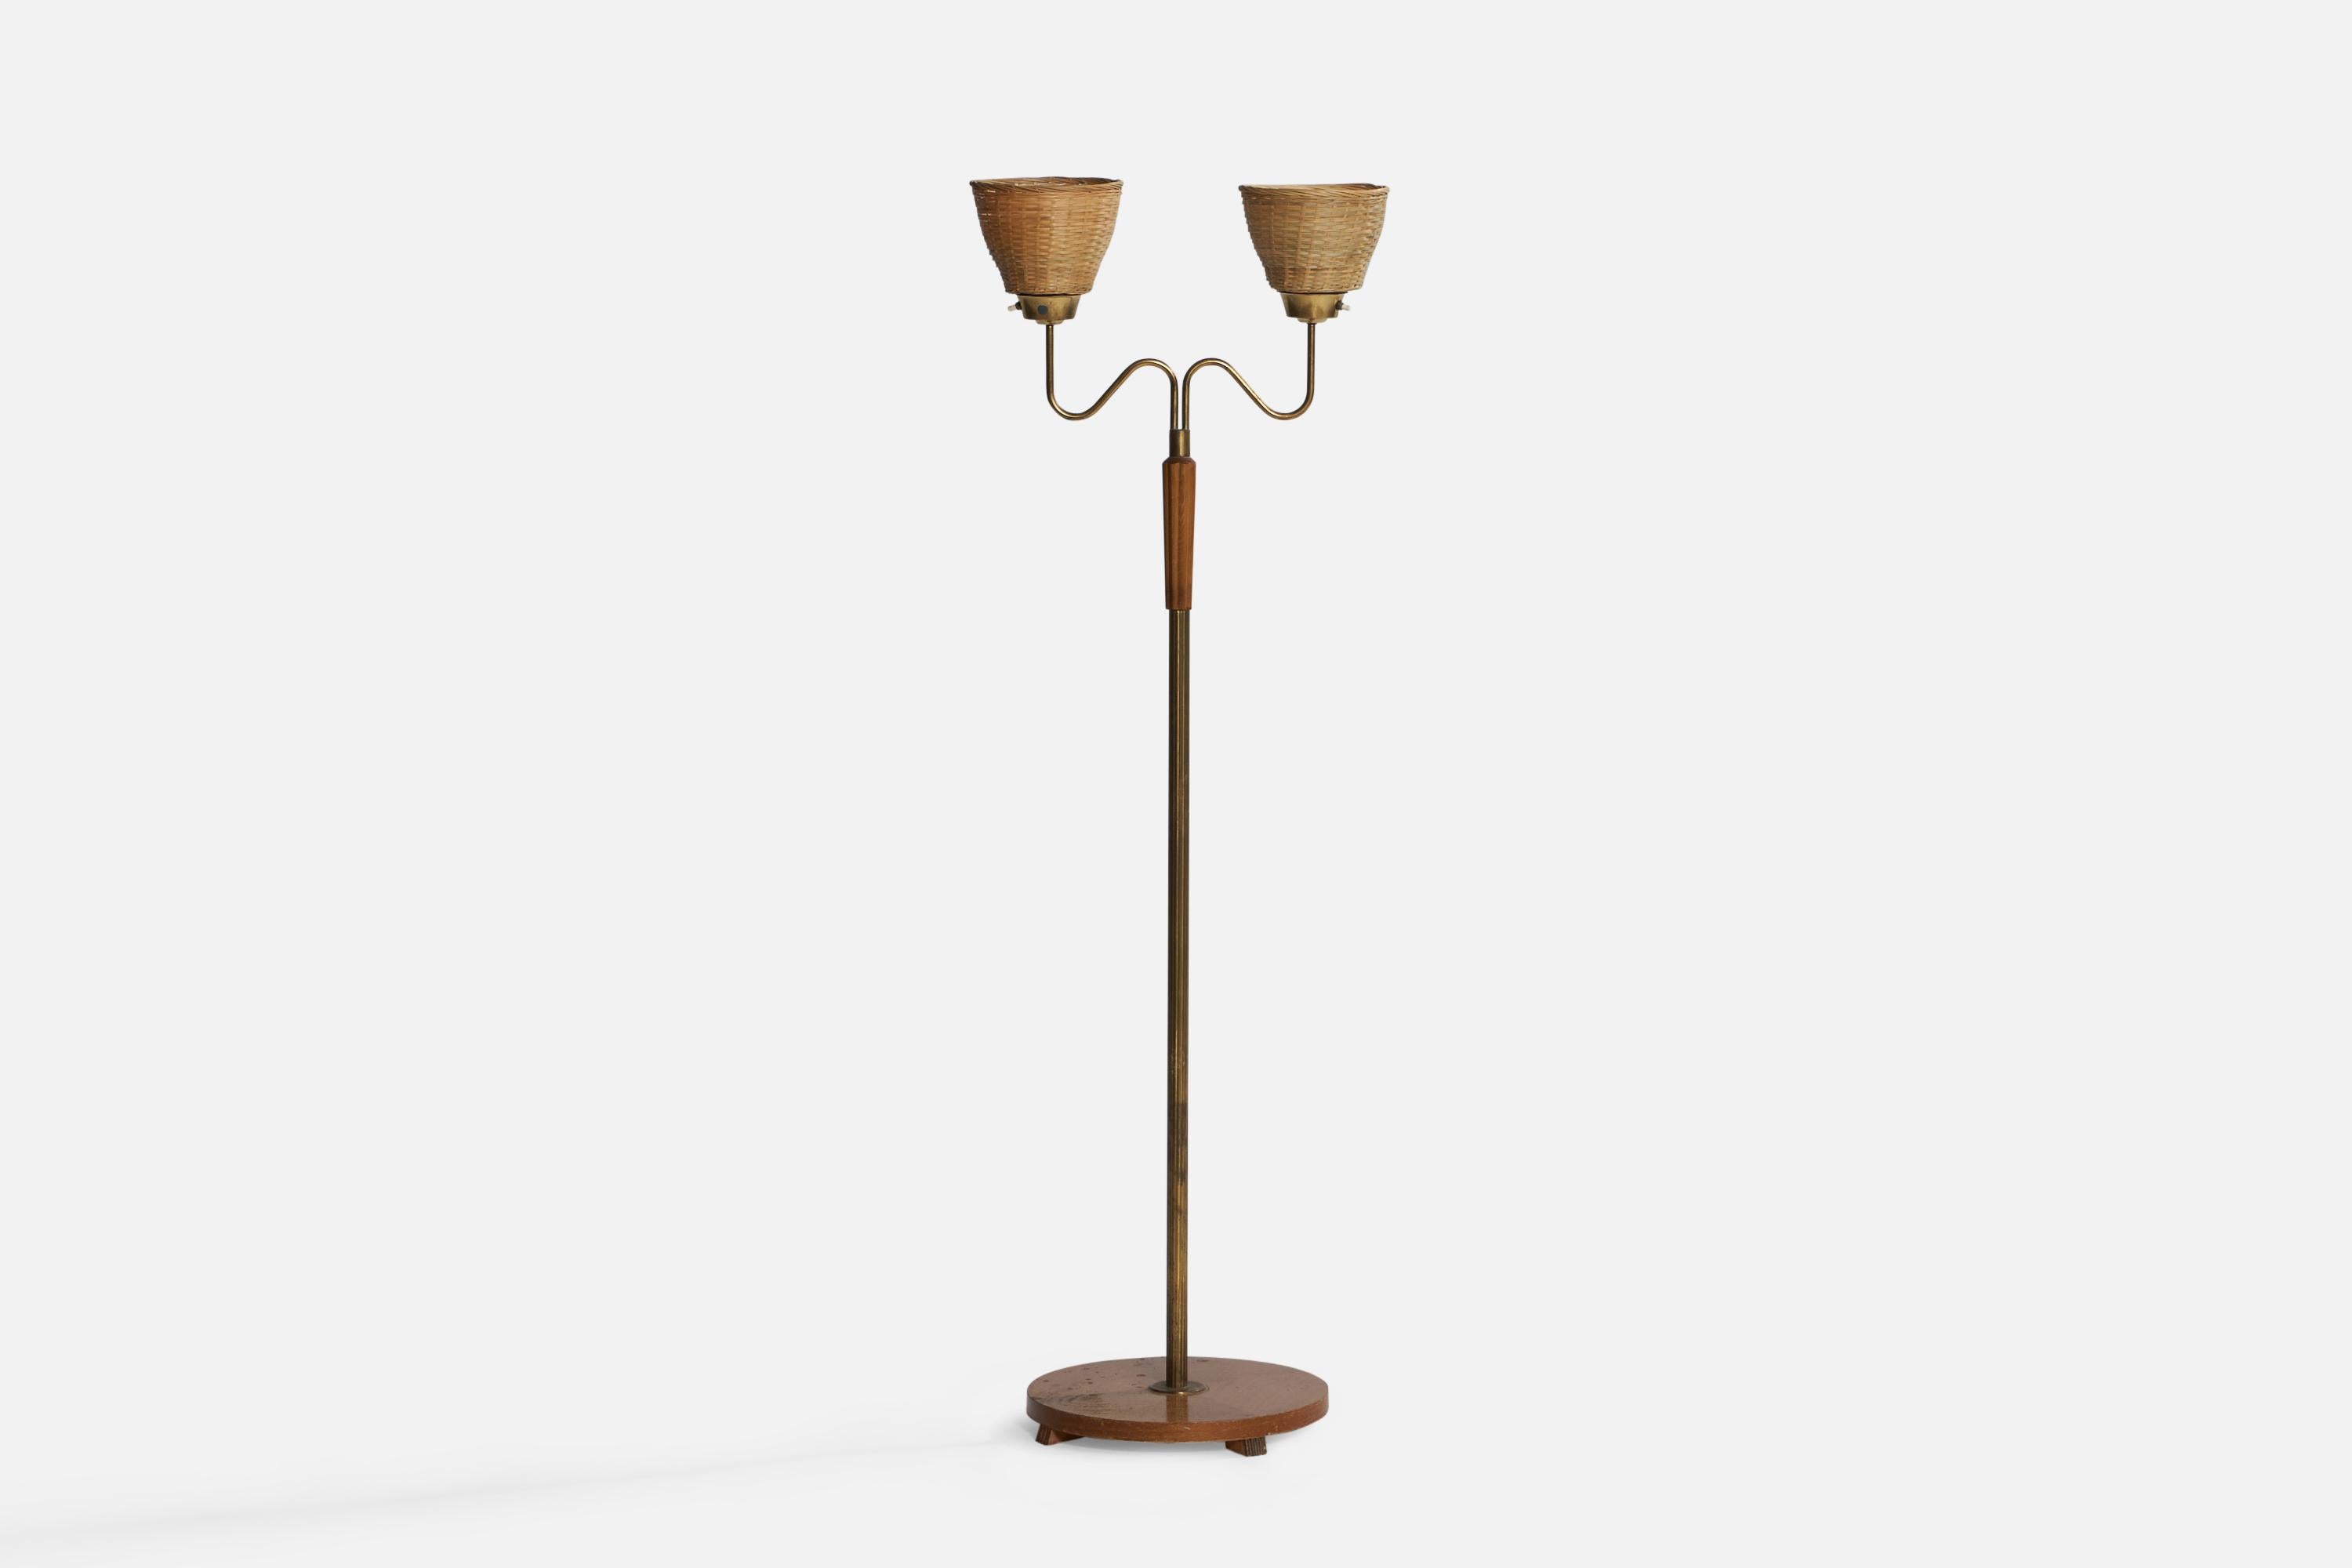 Lampadaire à deux bras en laiton, chêne teinté et rotin, conçu et produit en Suède, années 1940.

Dimensions totales (pouces) : 59,1